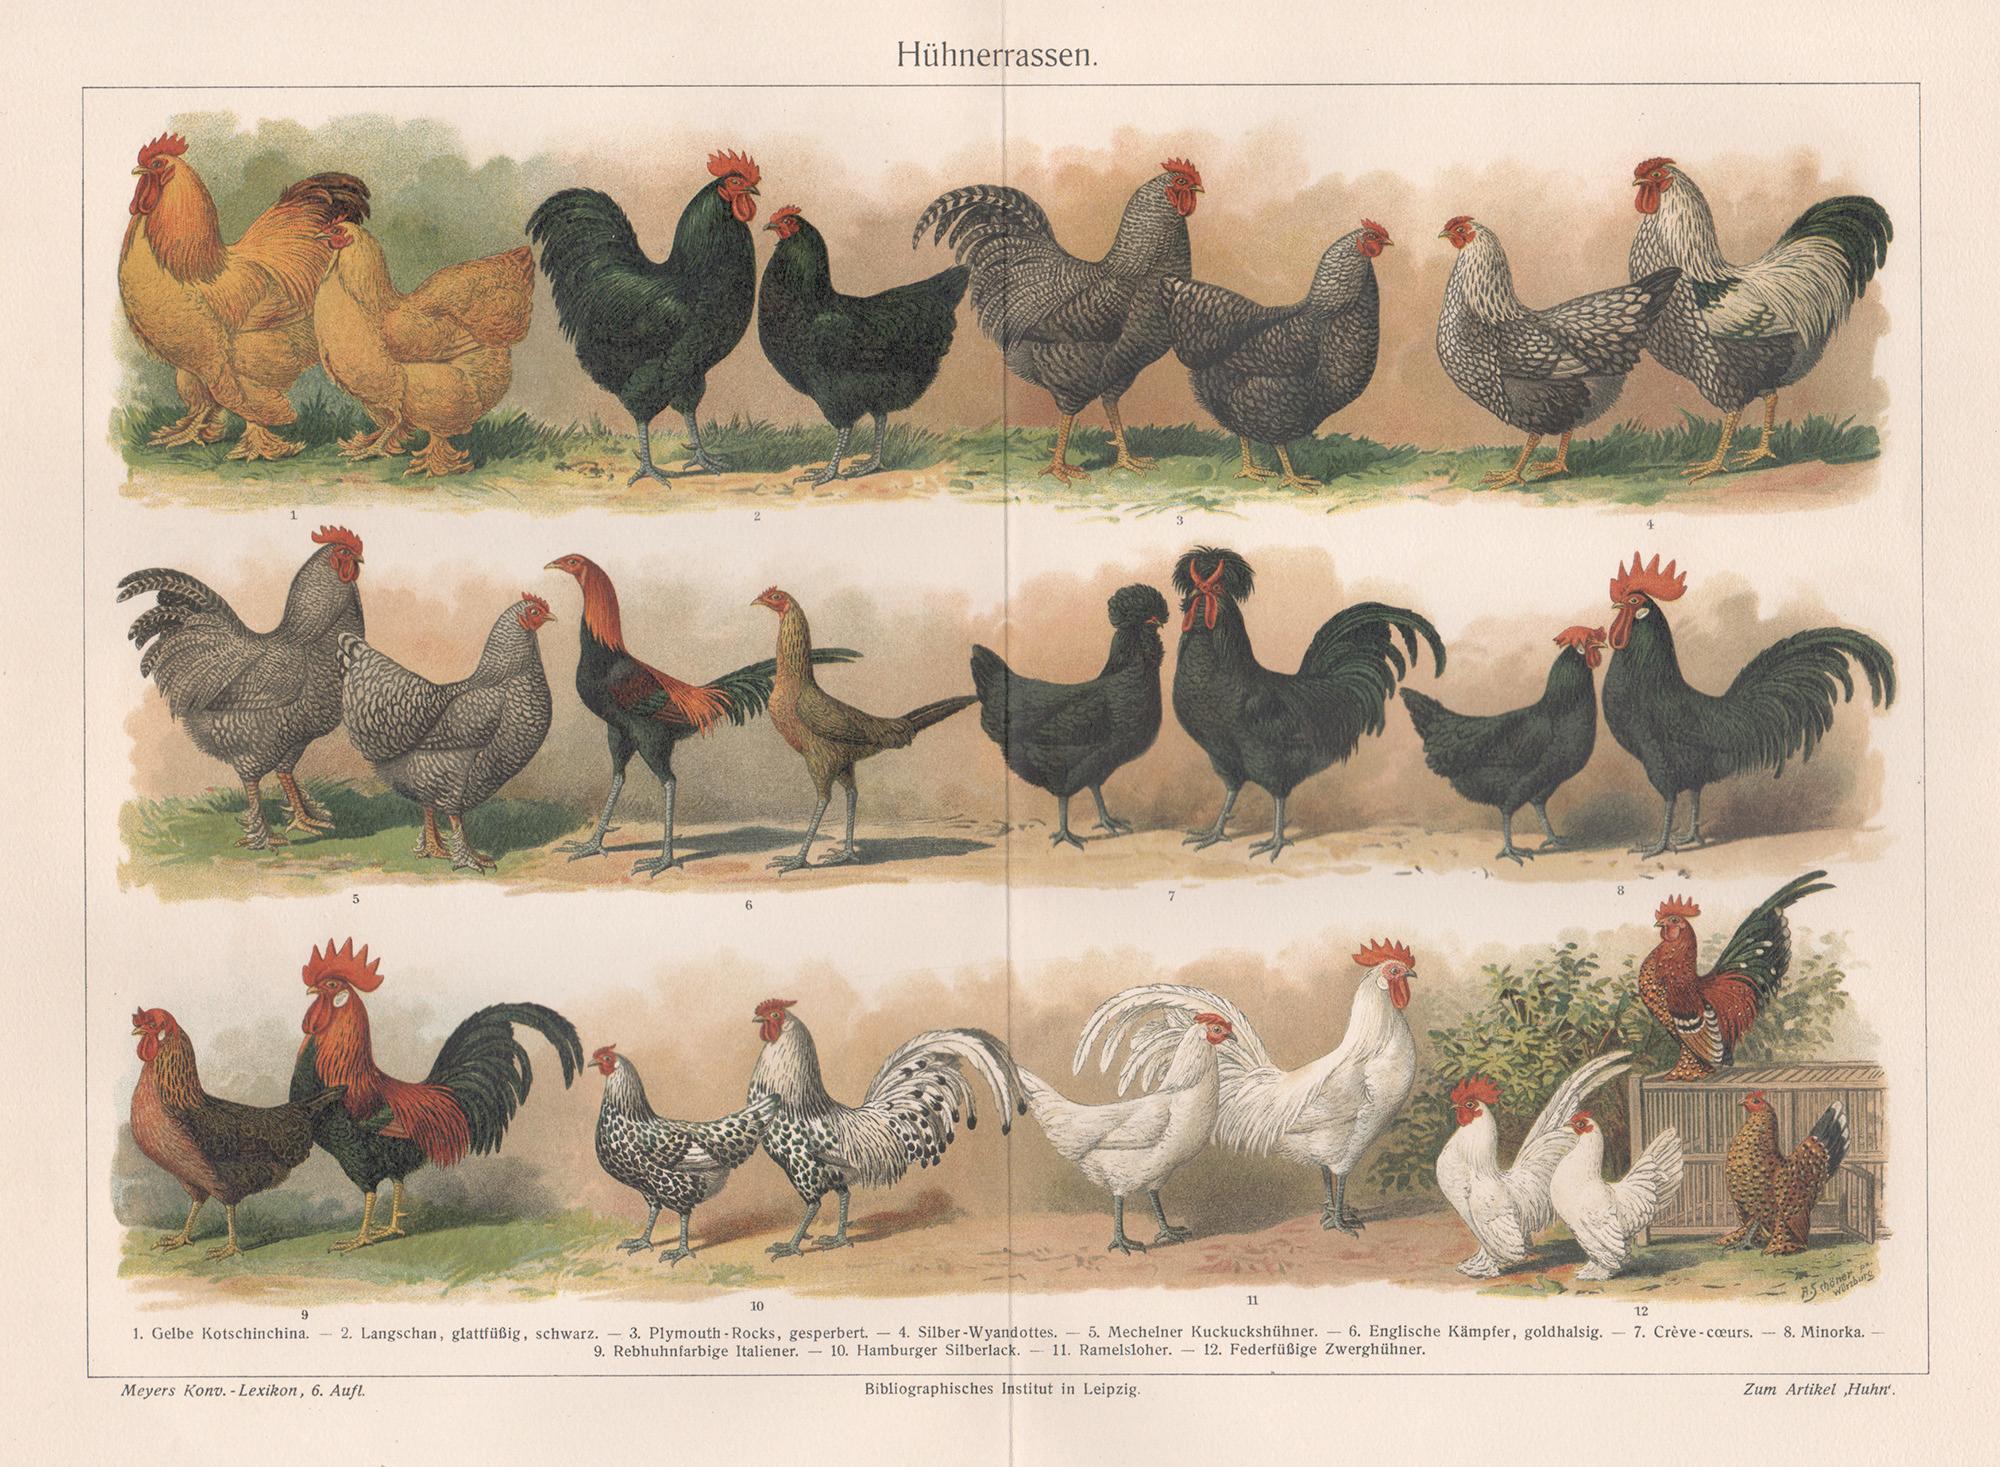 Huhnerrassen (Poultry Breeds), German antique chicken bird chromolithograph